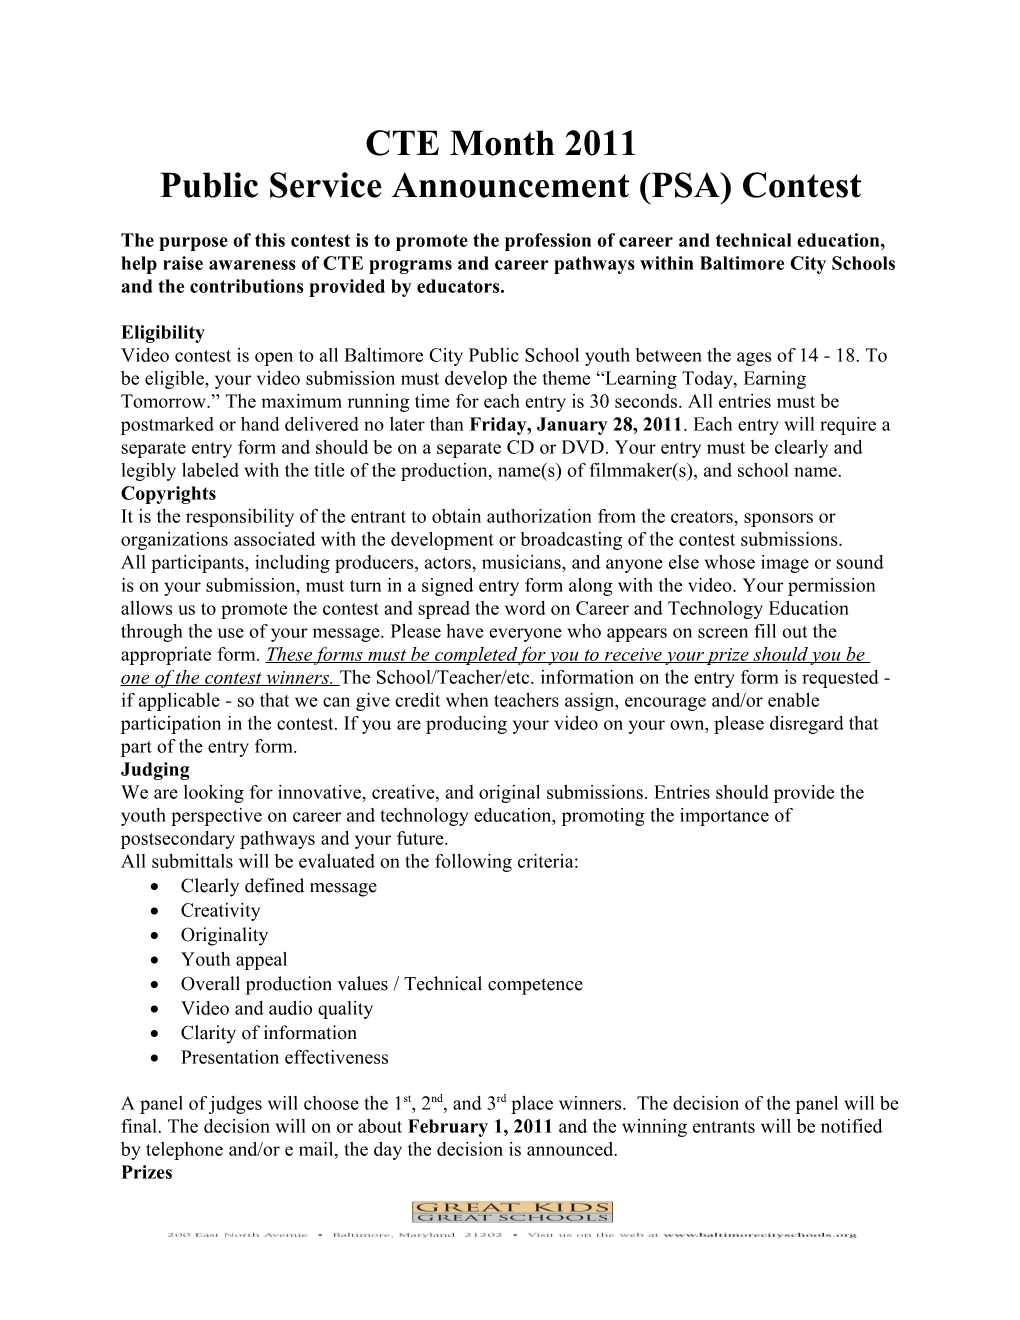 Public Service Announcement (PSA) Contest